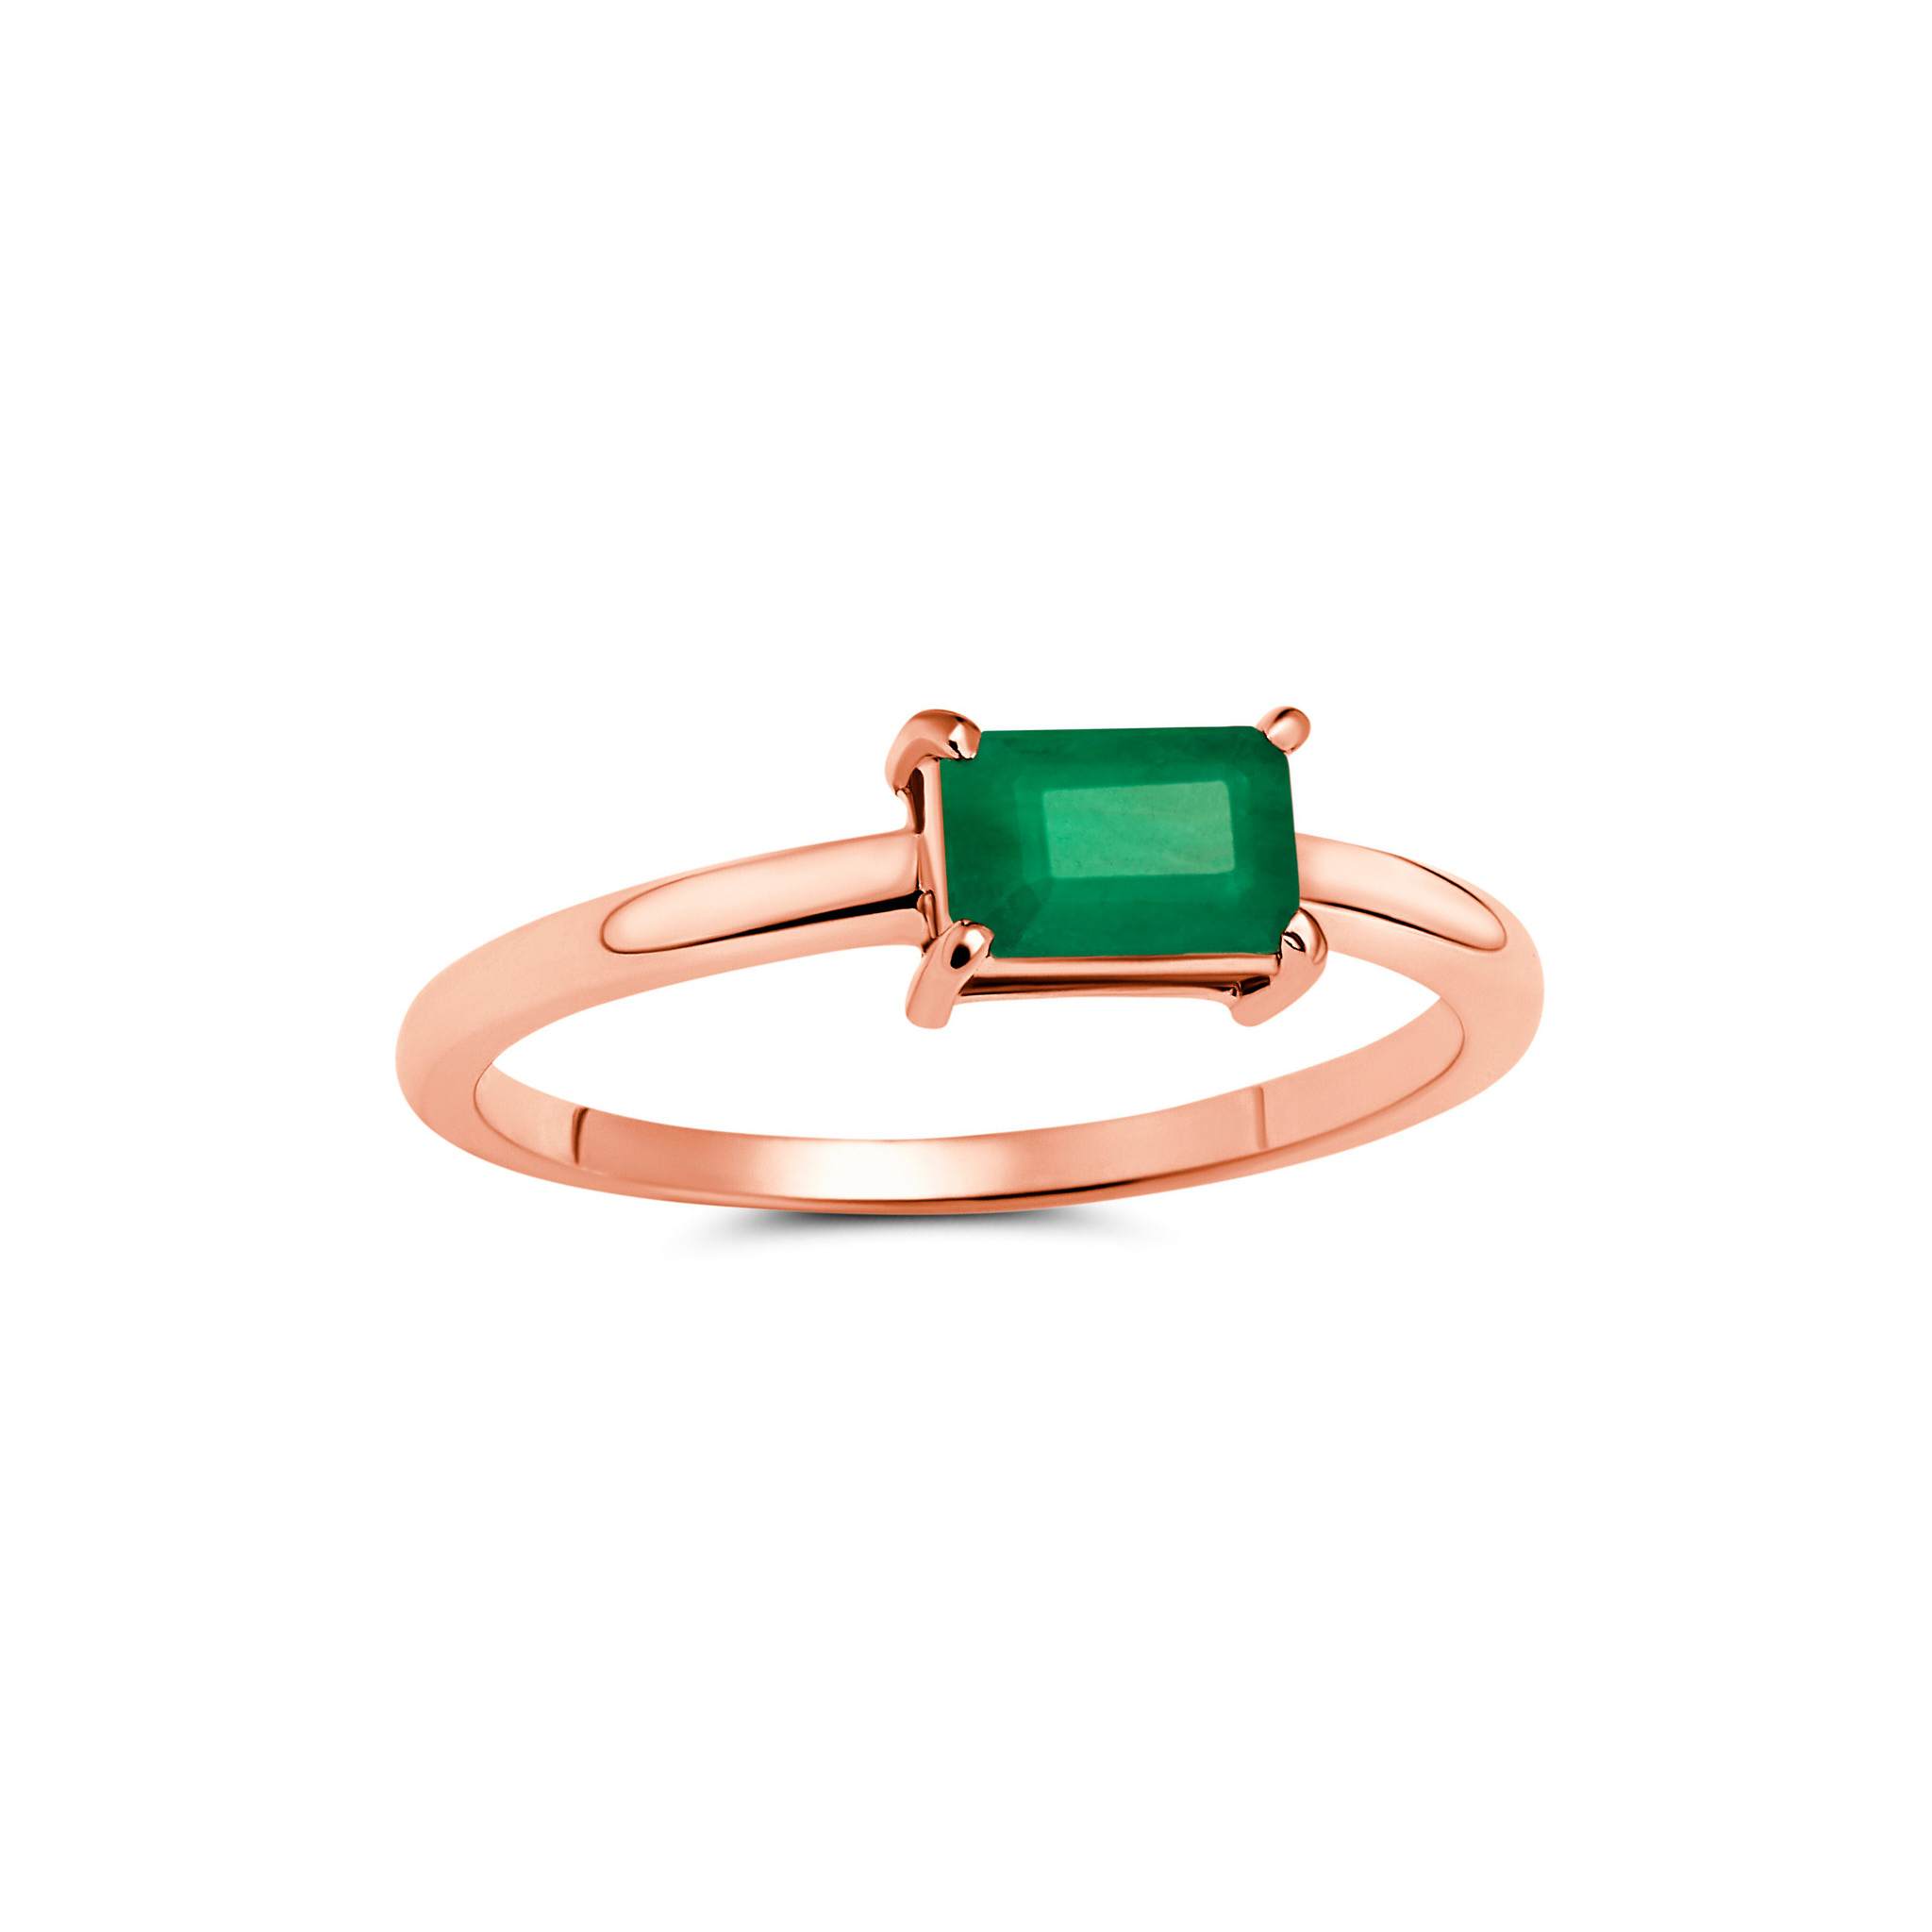 1ct Emerald Cut Gemstone Ring